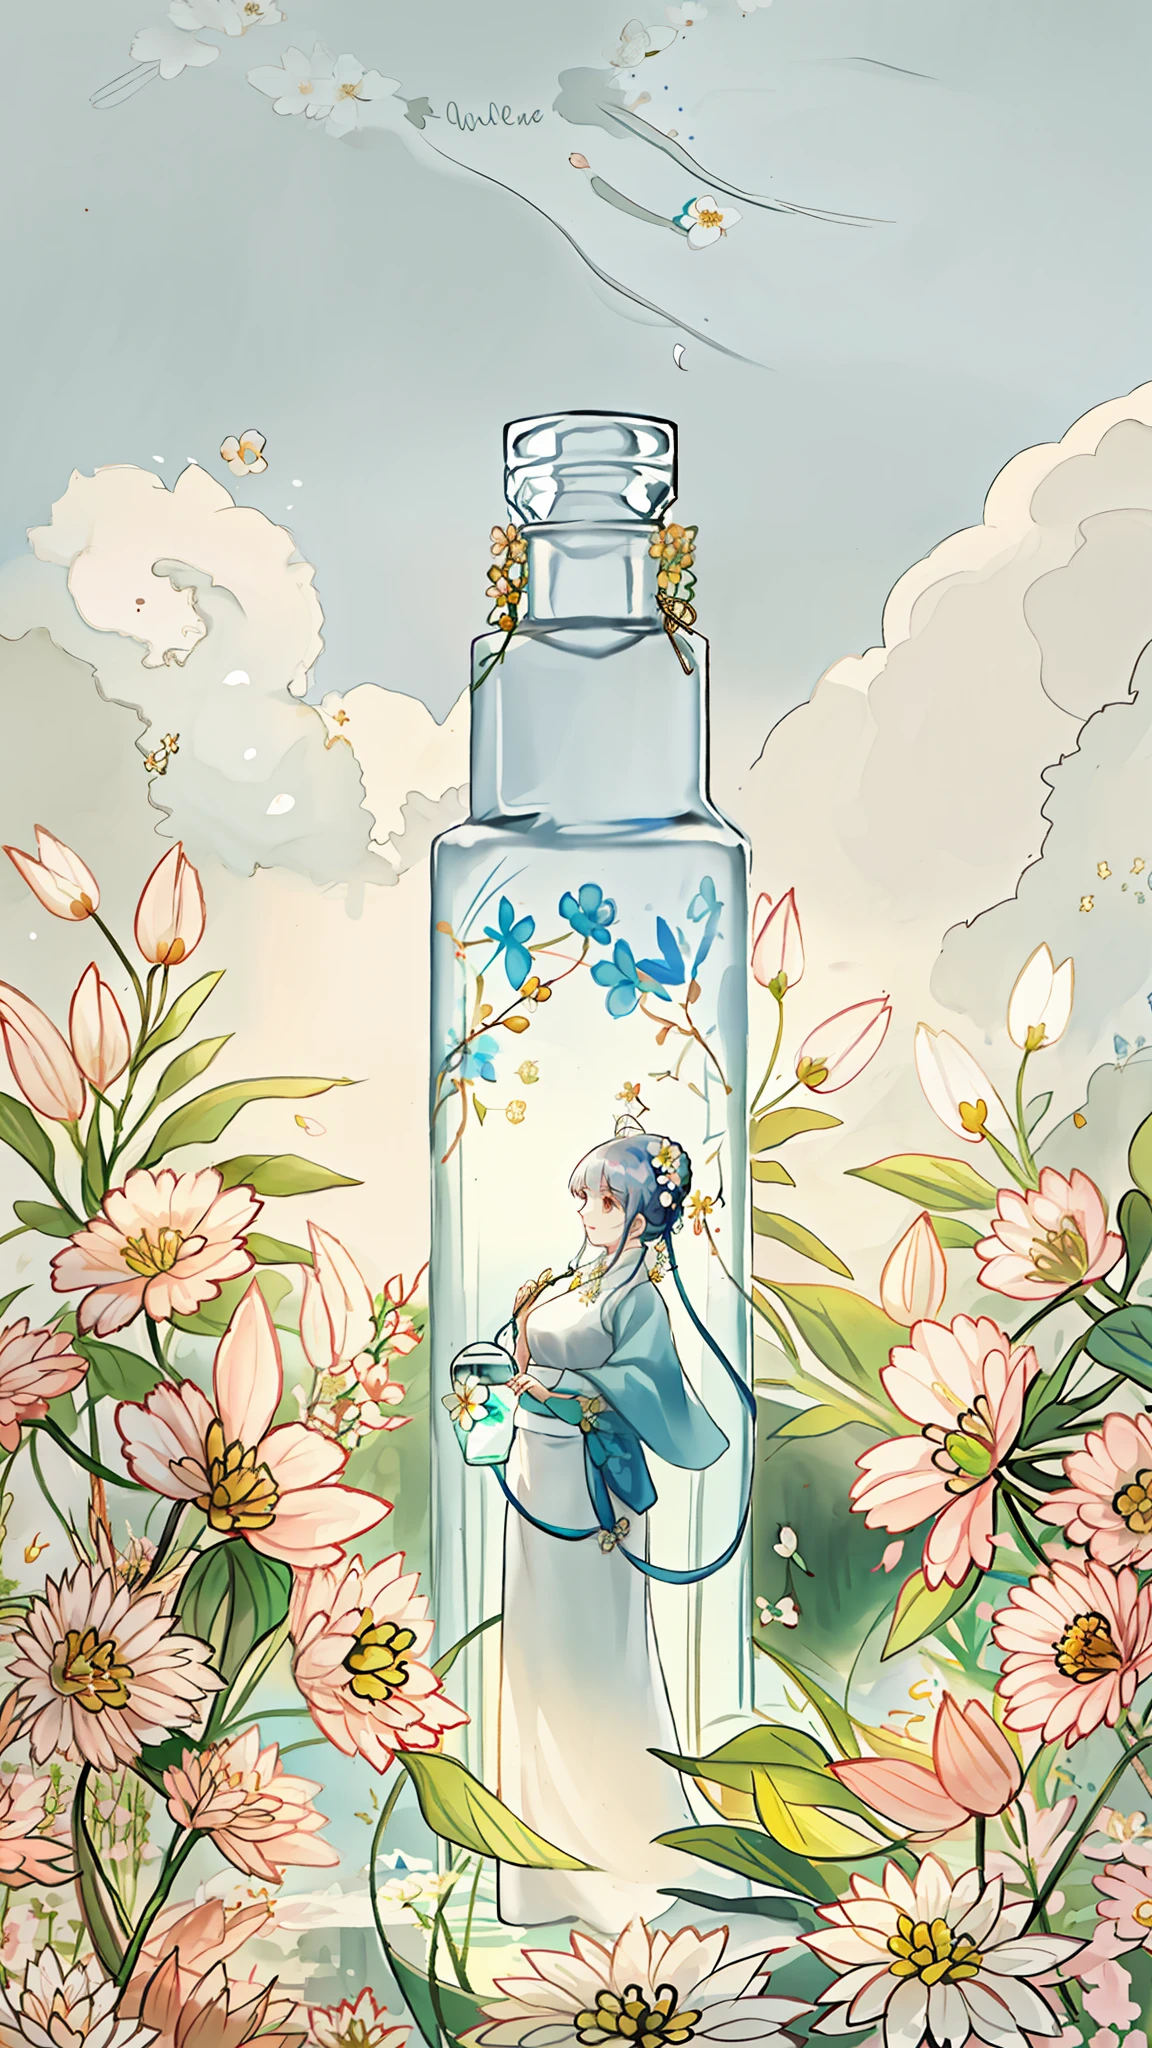 Белая круглая бутылка, surrounded by Цветы, Молодая женщина, стоящая рядом с бутылкой, нежное лицо, Цветы, цвет, жизненная сила, Красота, Контраст, природа, Жизненная сила, Солнечный лучик. Красивая атмосфера, Гармоничная и комфортная интеграция